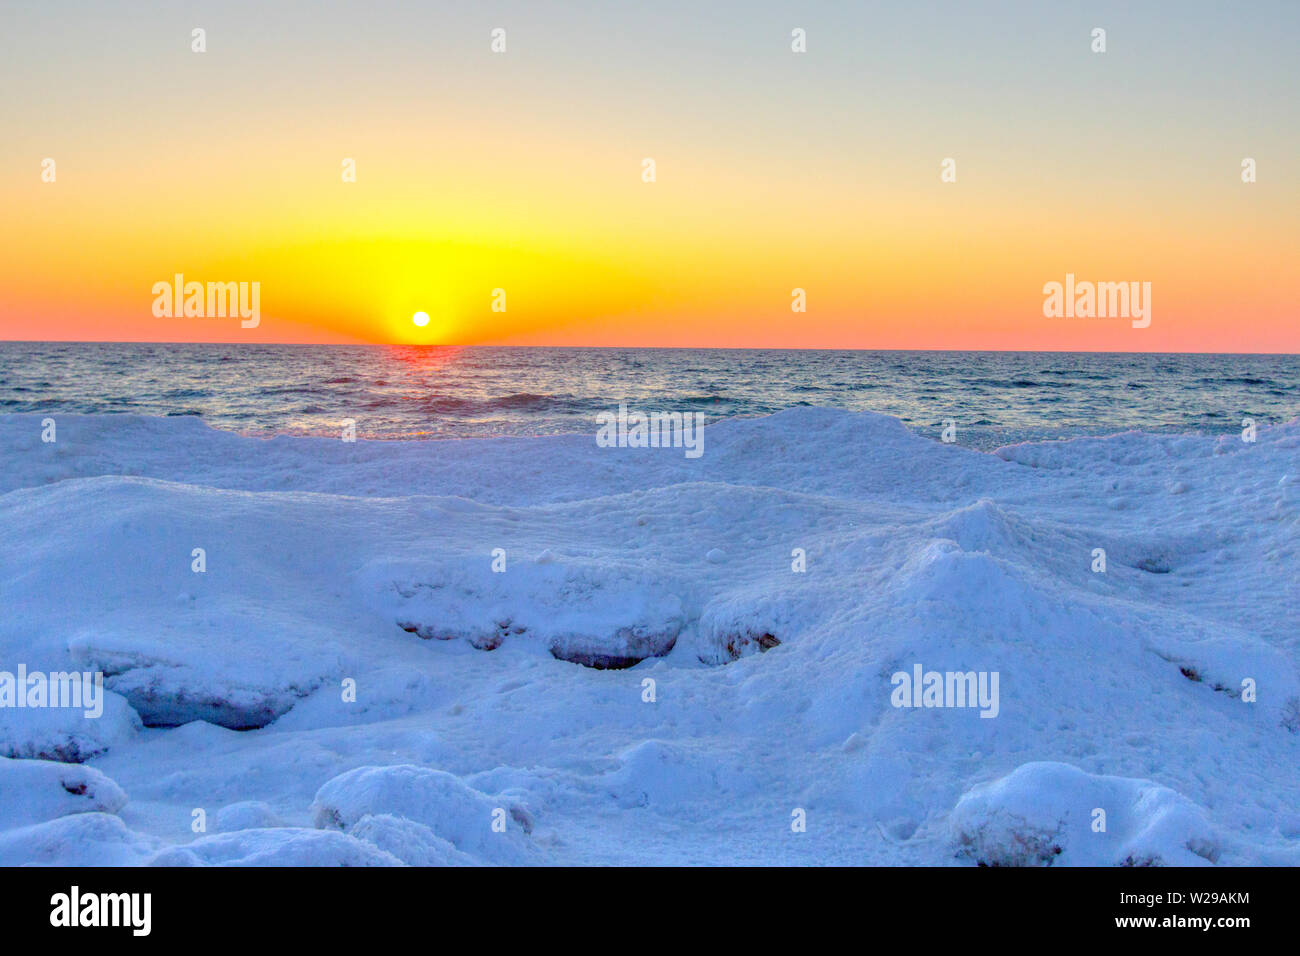 Formazioni di ghiaccio sulla costa del lago Michigan. Bel tramonto sulla costa del lago Michigan con formazioni di ghiaccio sulla riva di Sleeping Bear Dunes. Foto Stock